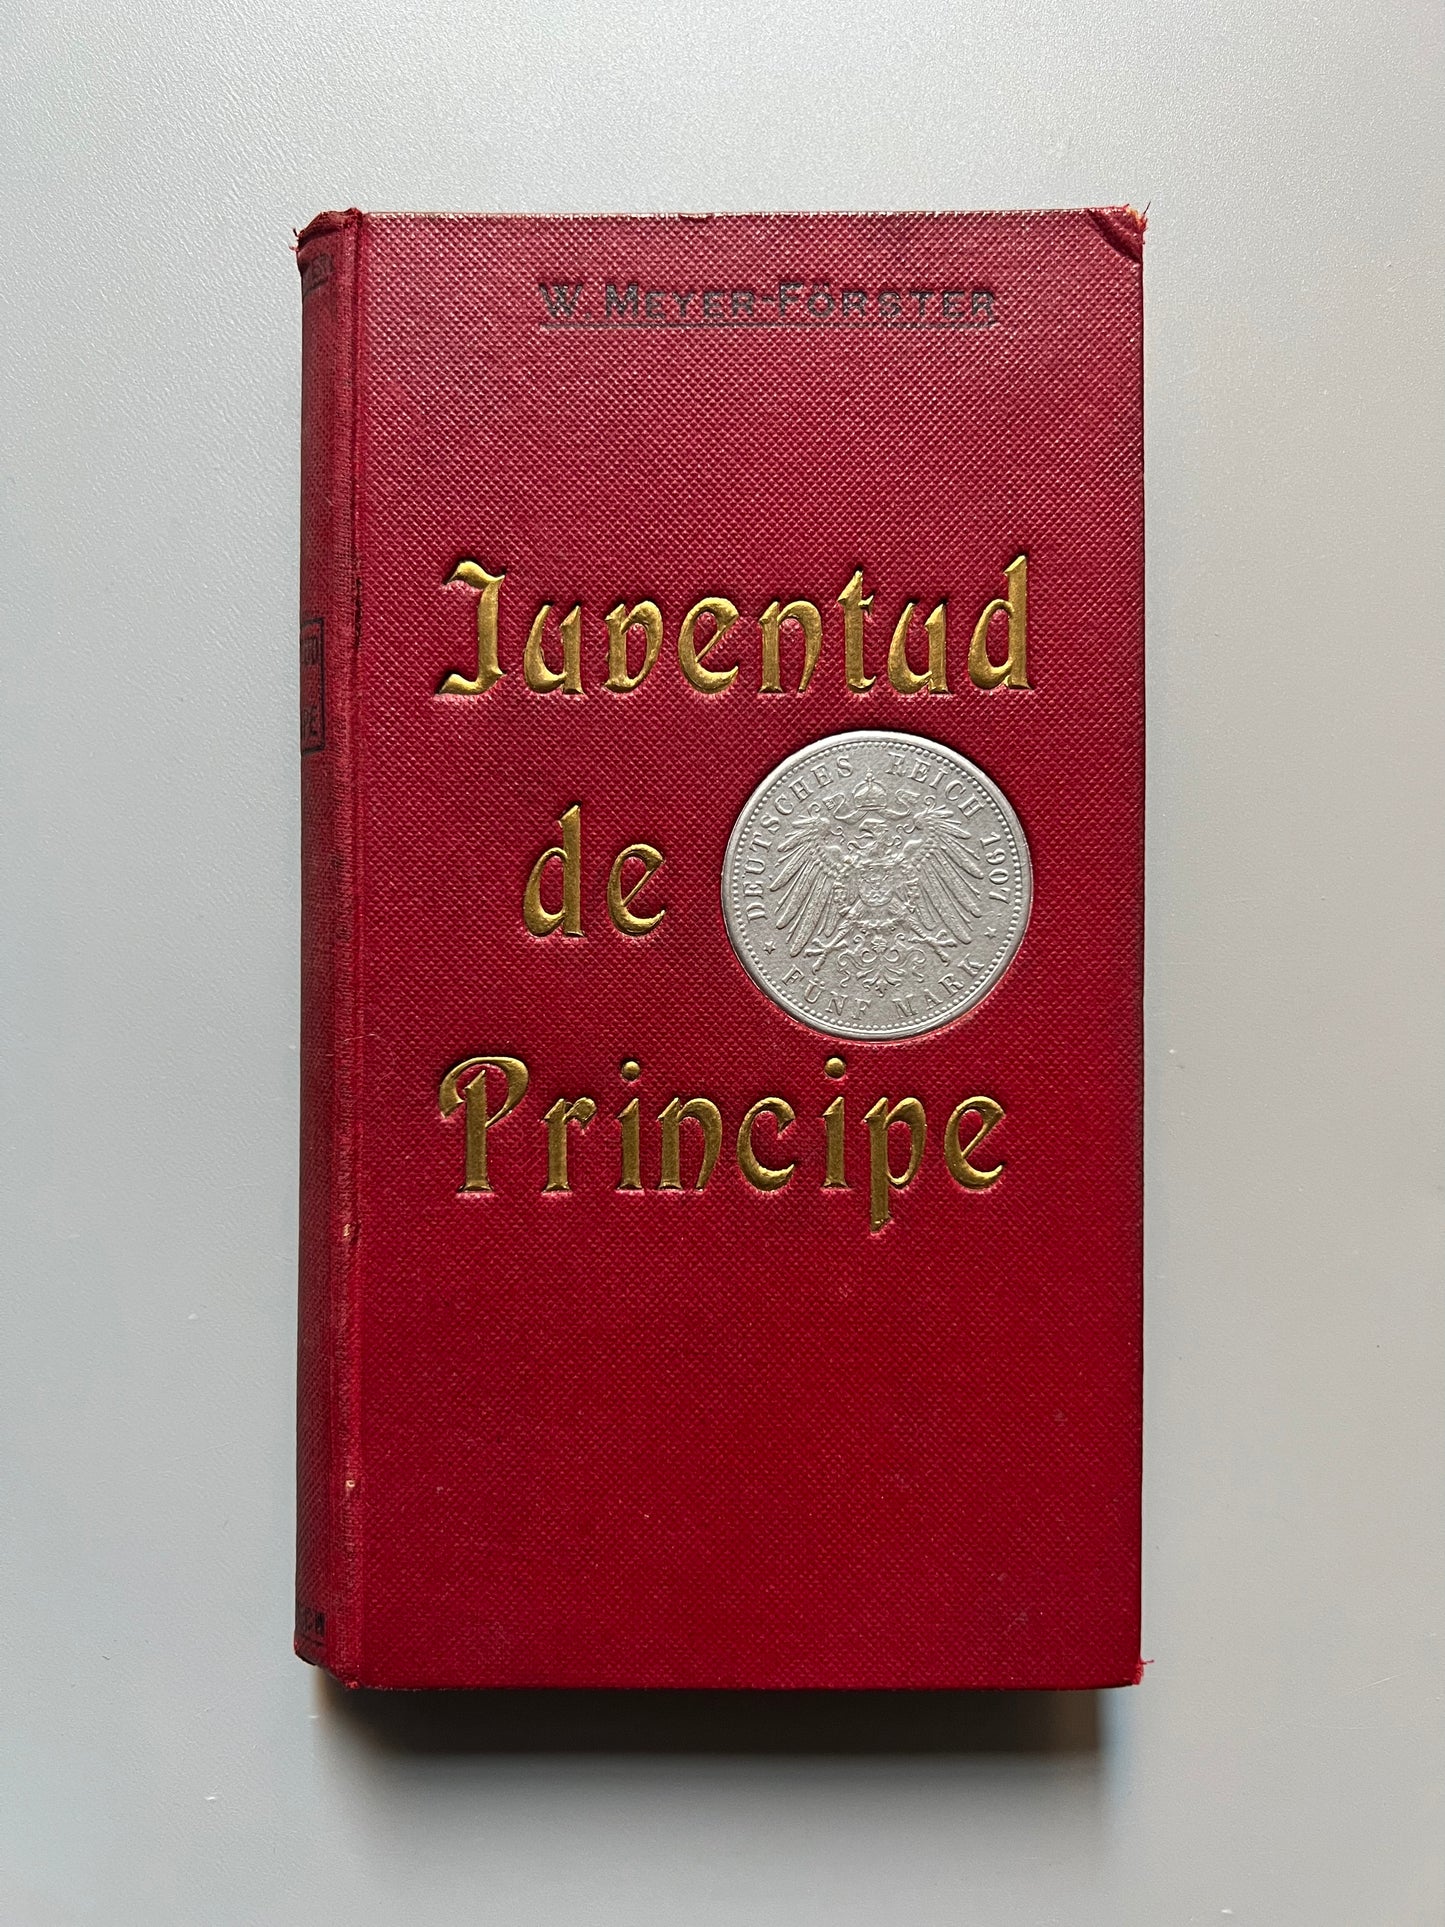 Carlos Enrique (Juventud de Príncipe), W. Meyer Förster - E. Domenech, 1909